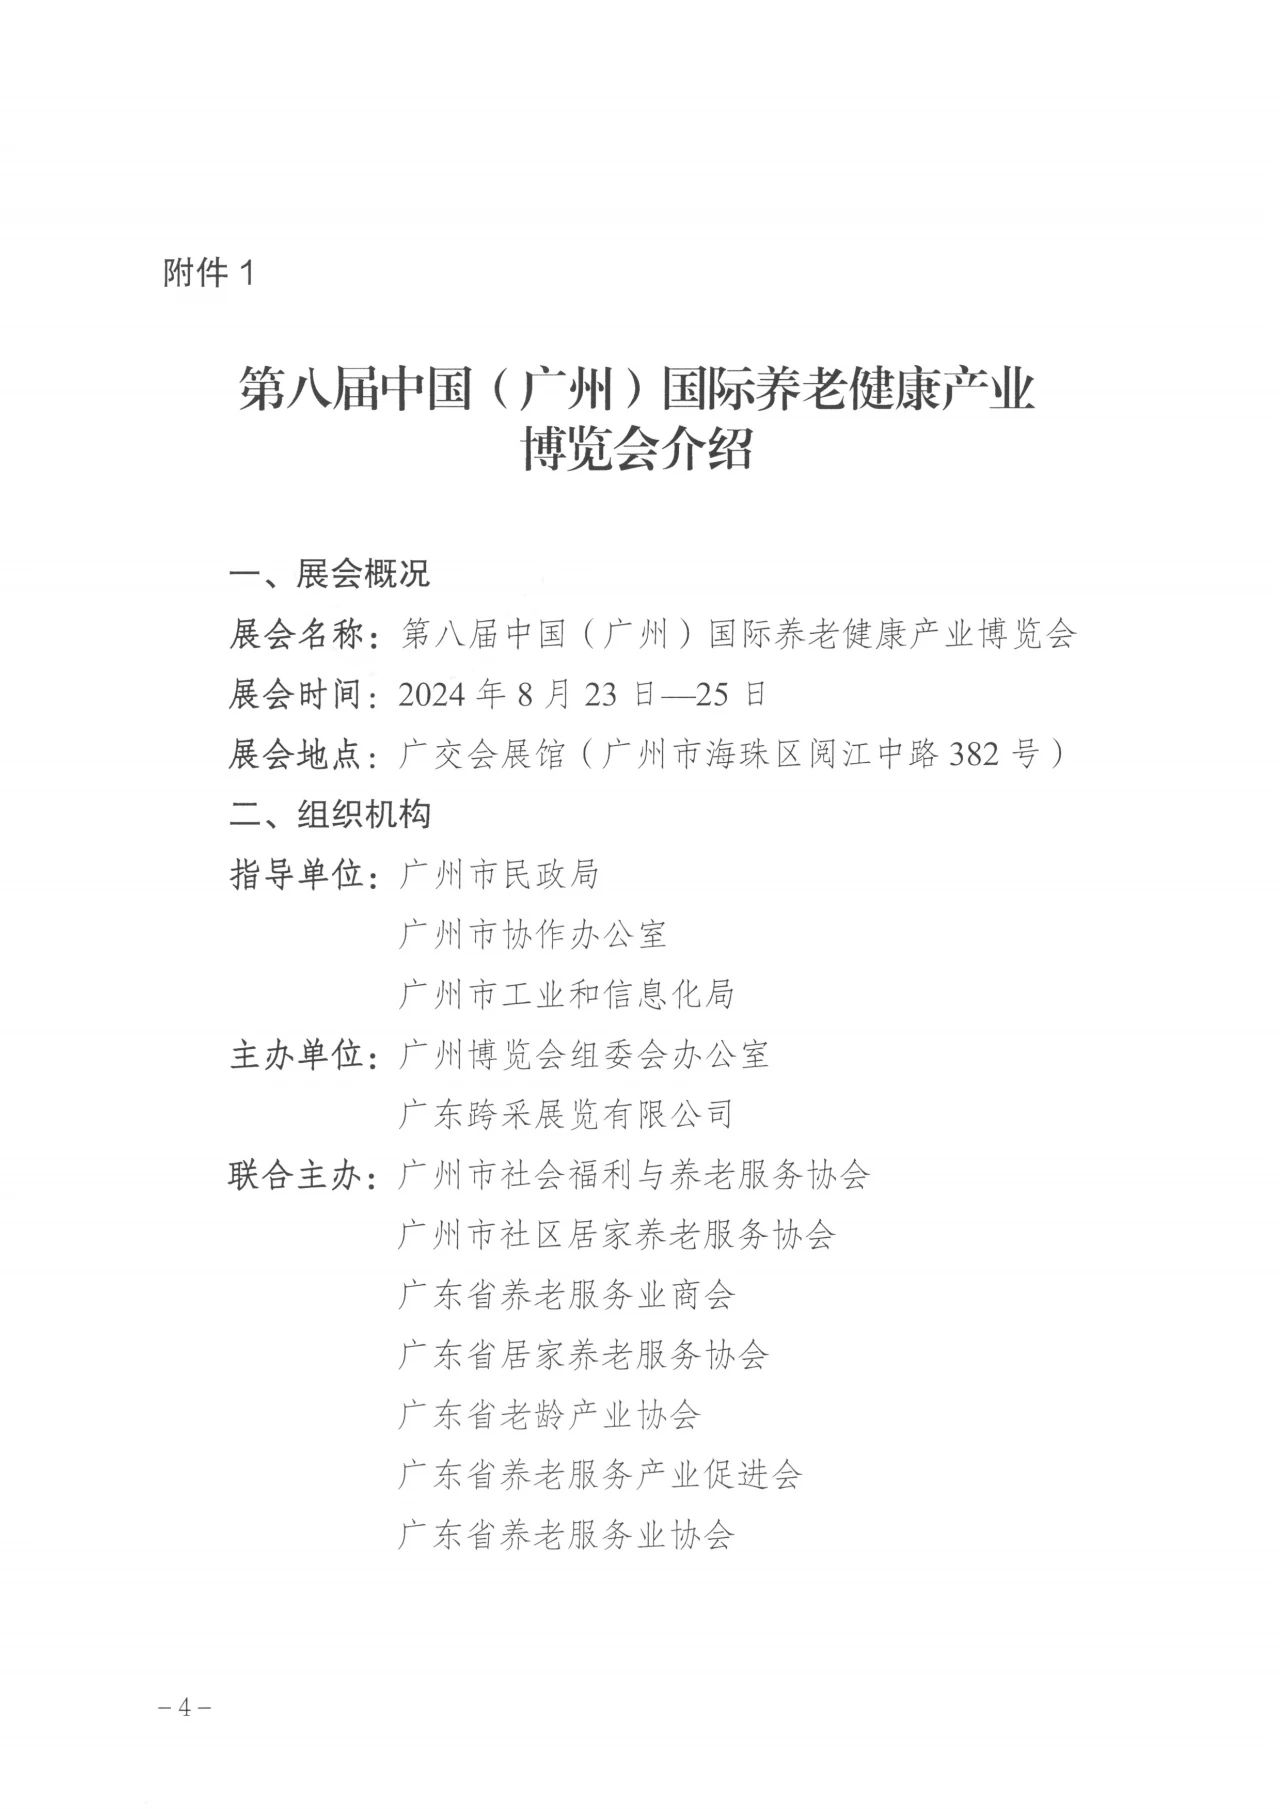 通知  广州市民政局关于邀请组织参加第八届广州老博会的函4.jpg